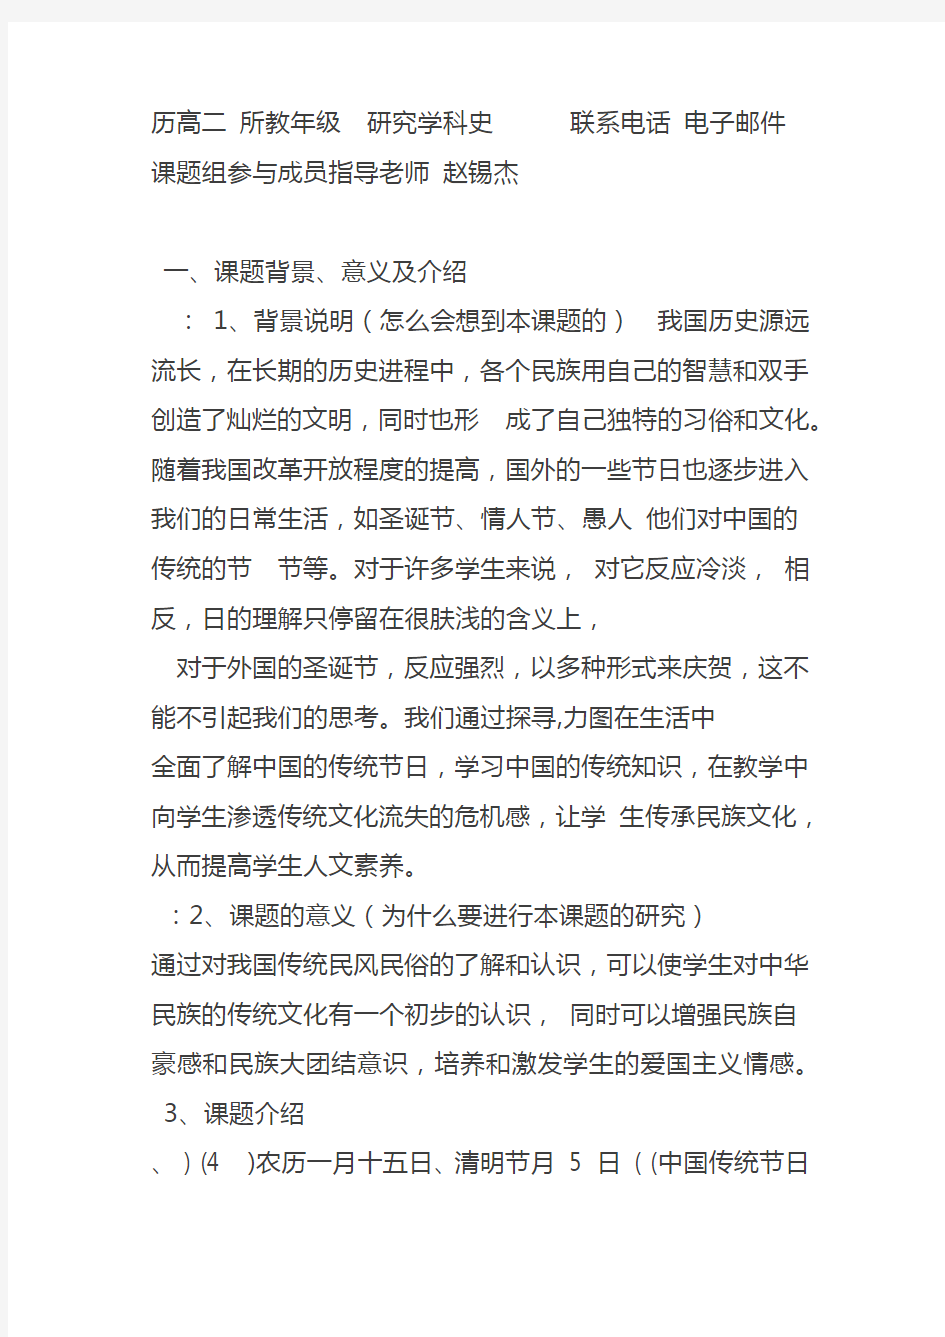 “中国传统节日的民俗文化”研究性学习记录表